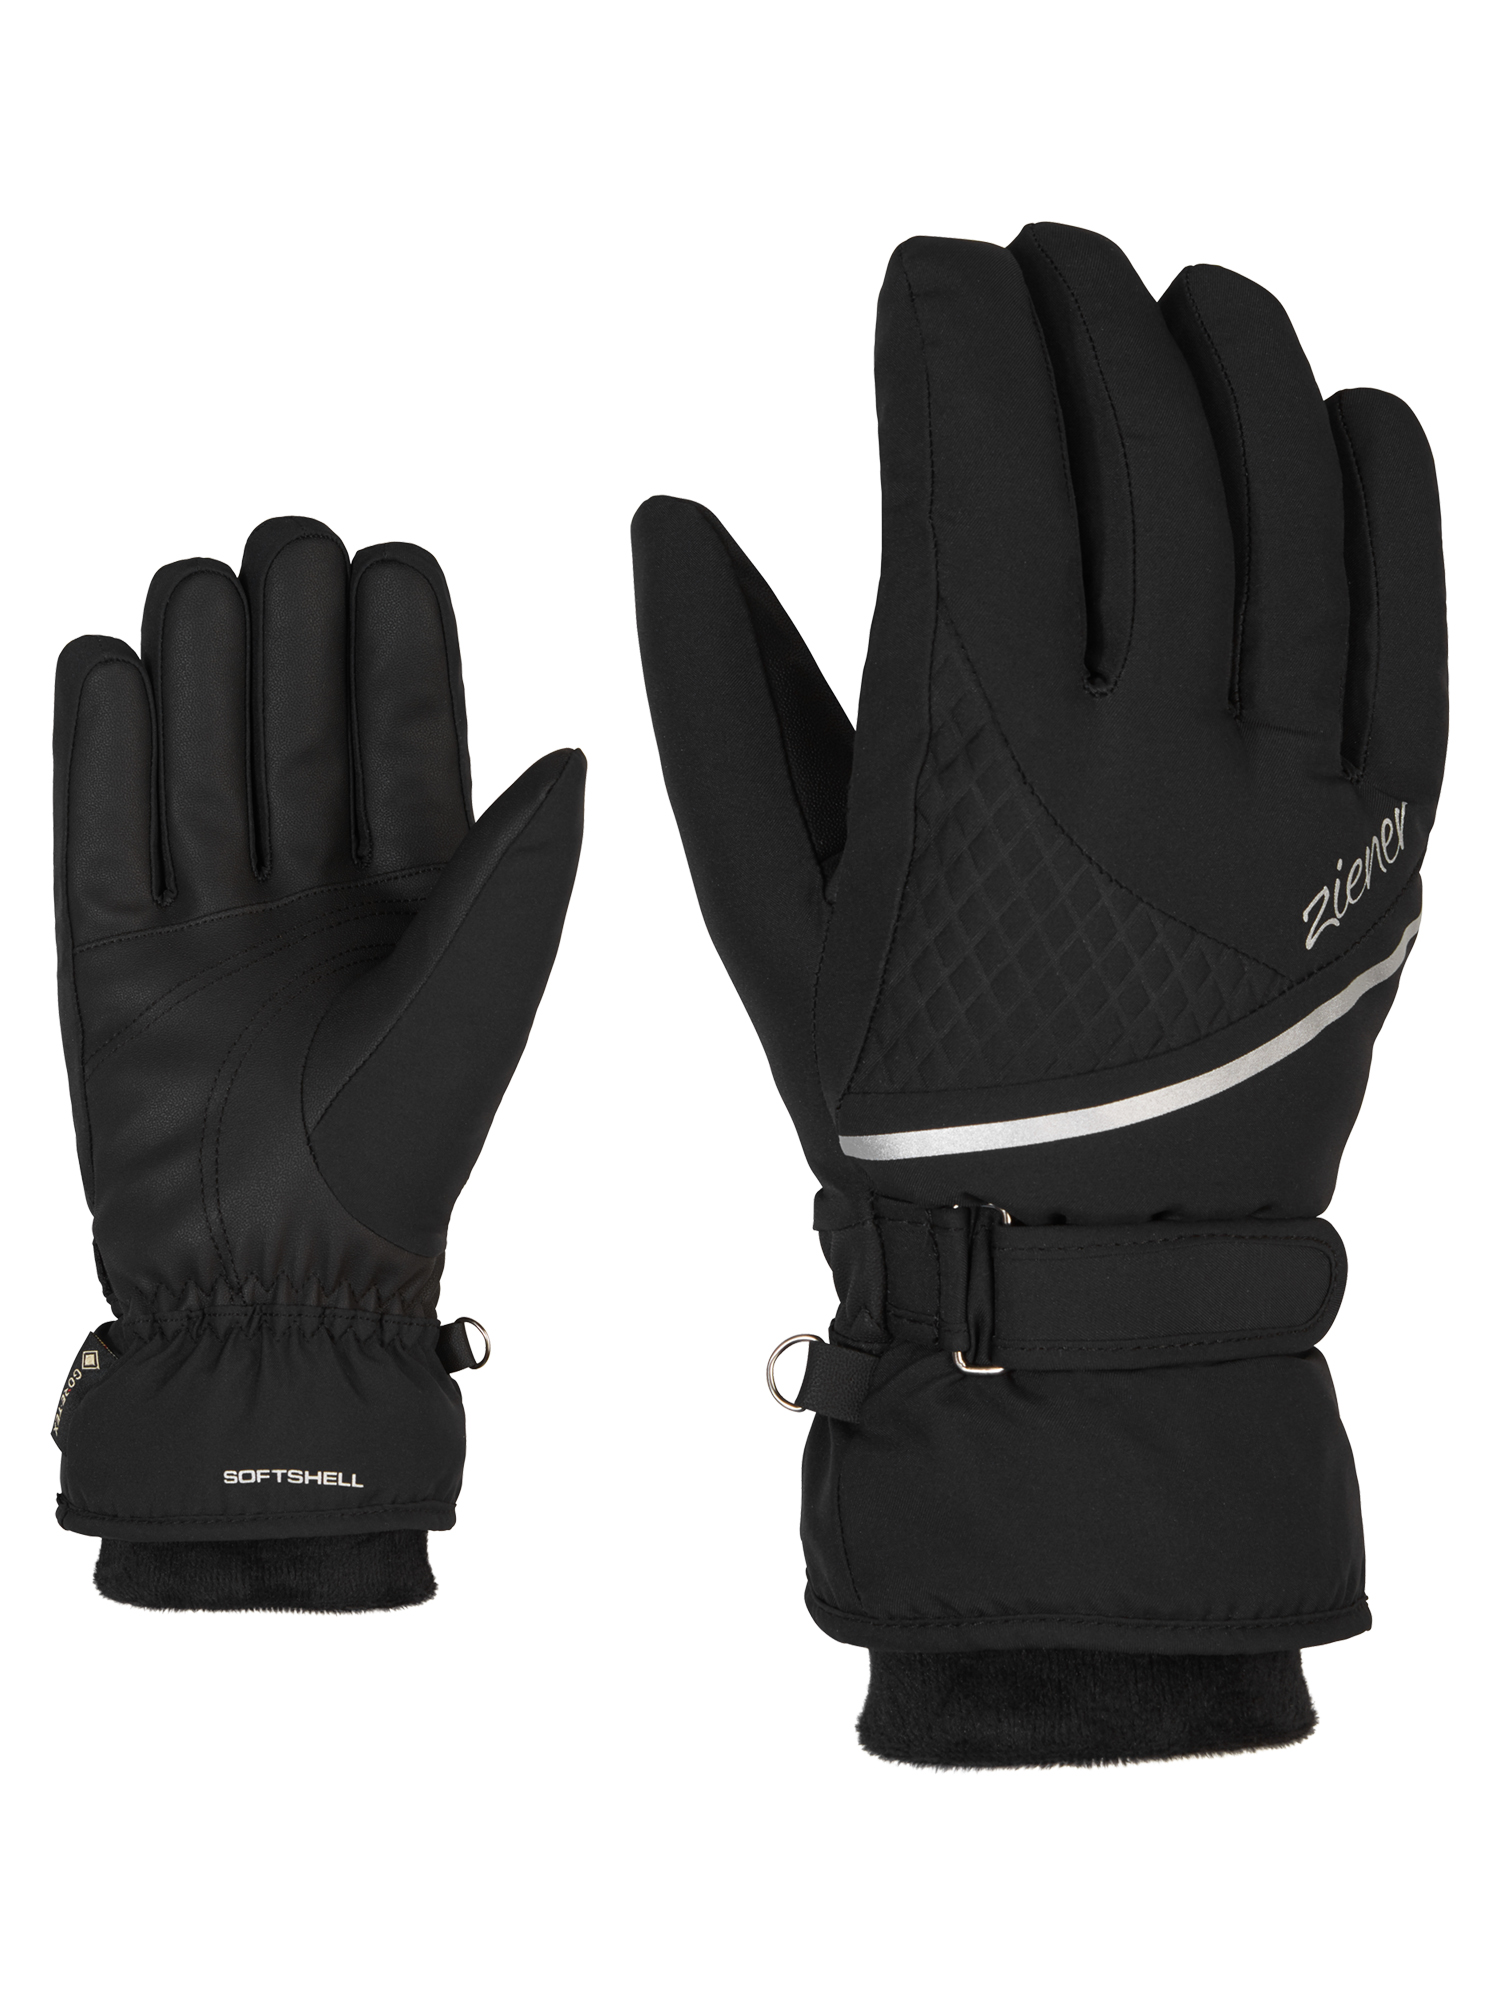 Ziener Kiana Gtx Gore Plus Warm Lady Glove